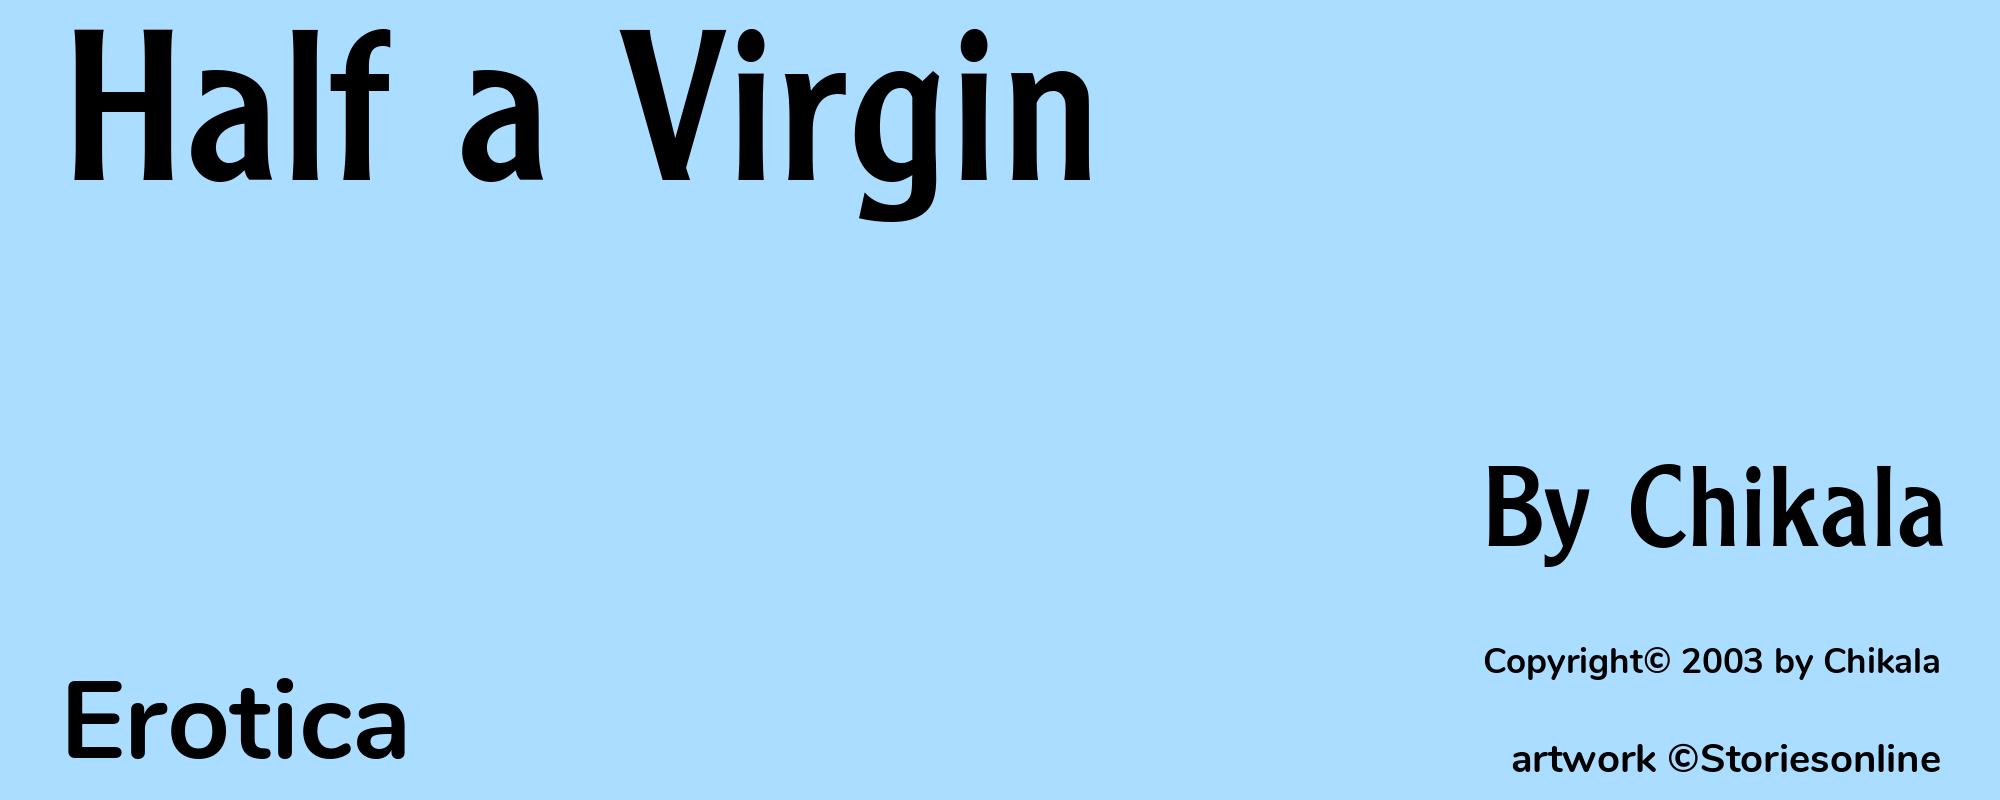 Half a Virgin - Cover